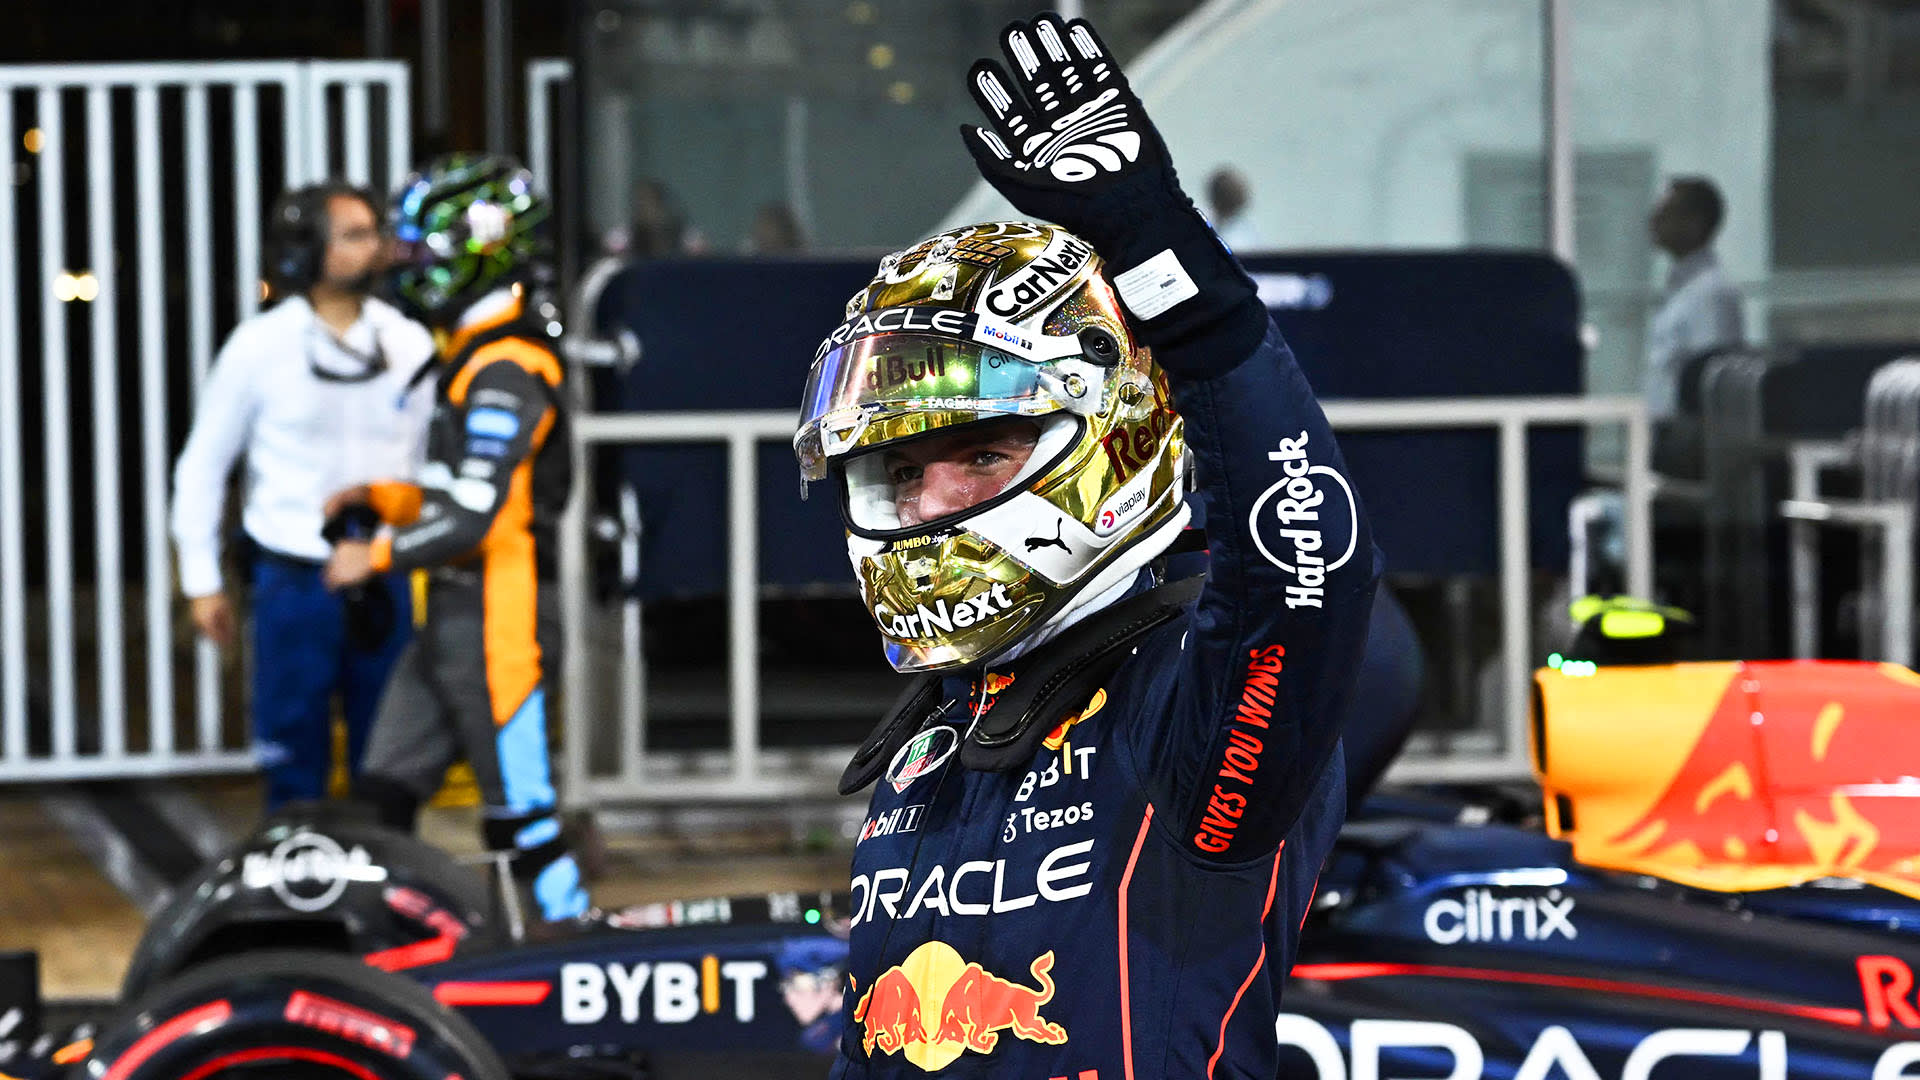 Báo cáo & Điểm nổi bật về Vòng loại của Abu Dhabi Grand Prix 2022: Verstappen giành pole khi Red Bull ghi bàn 1-2 trong trận chung kết mùa giải tại Yas Marina